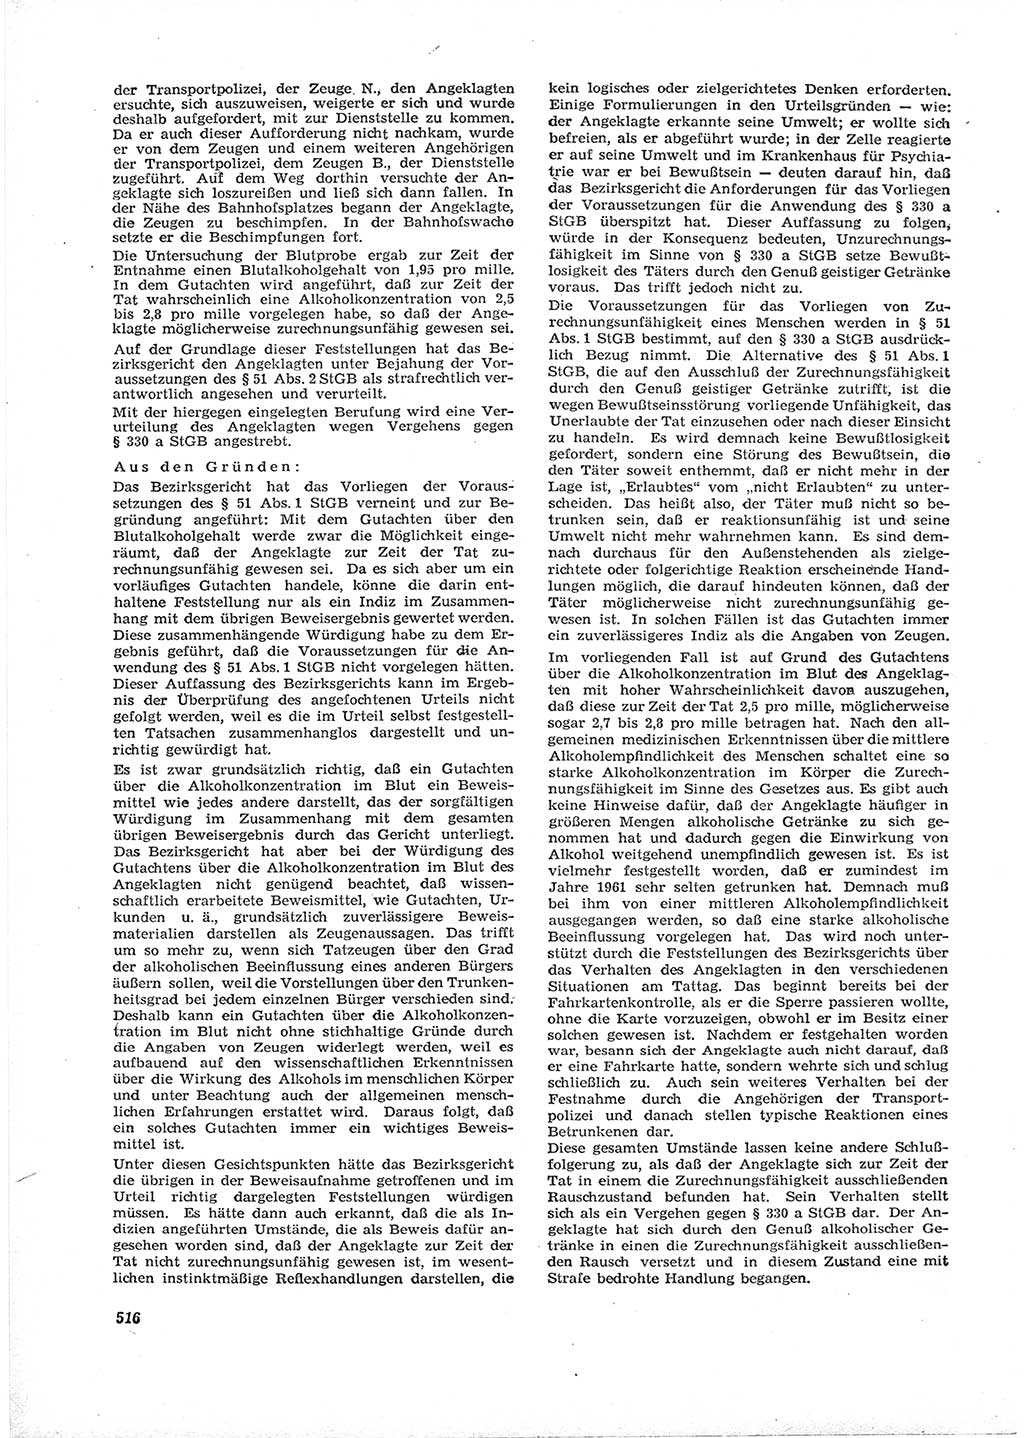 Neue Justiz (NJ), Zeitschrift für Recht und Rechtswissenschaft [Deutsche Demokratische Republik (DDR)], 16. Jahrgang 1962, Seite 516 (NJ DDR 1962, S. 516)